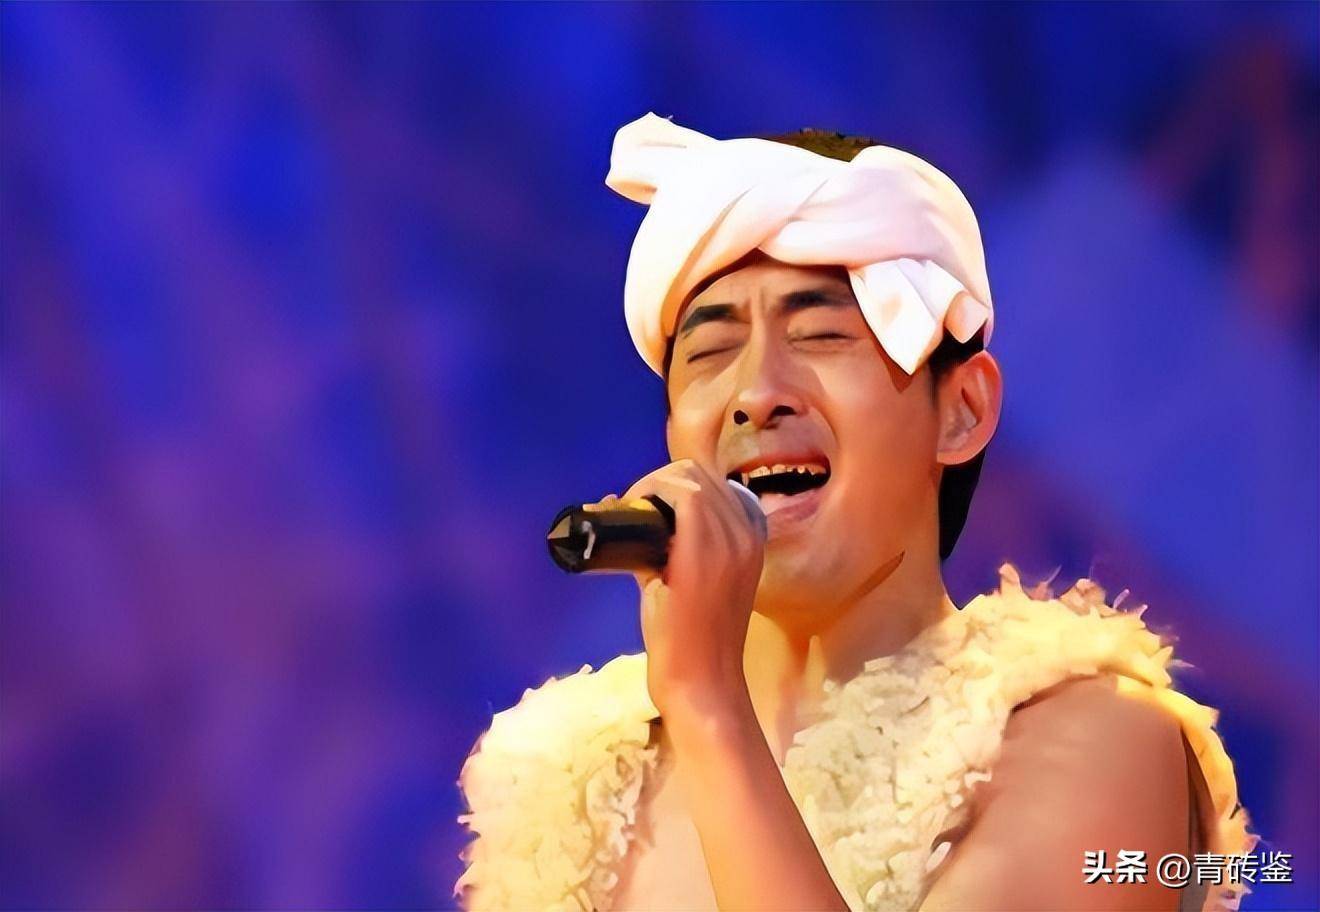 阿宝原名张少淳,在2005年时登上《星光大道》的舞台,在台上他绑着白